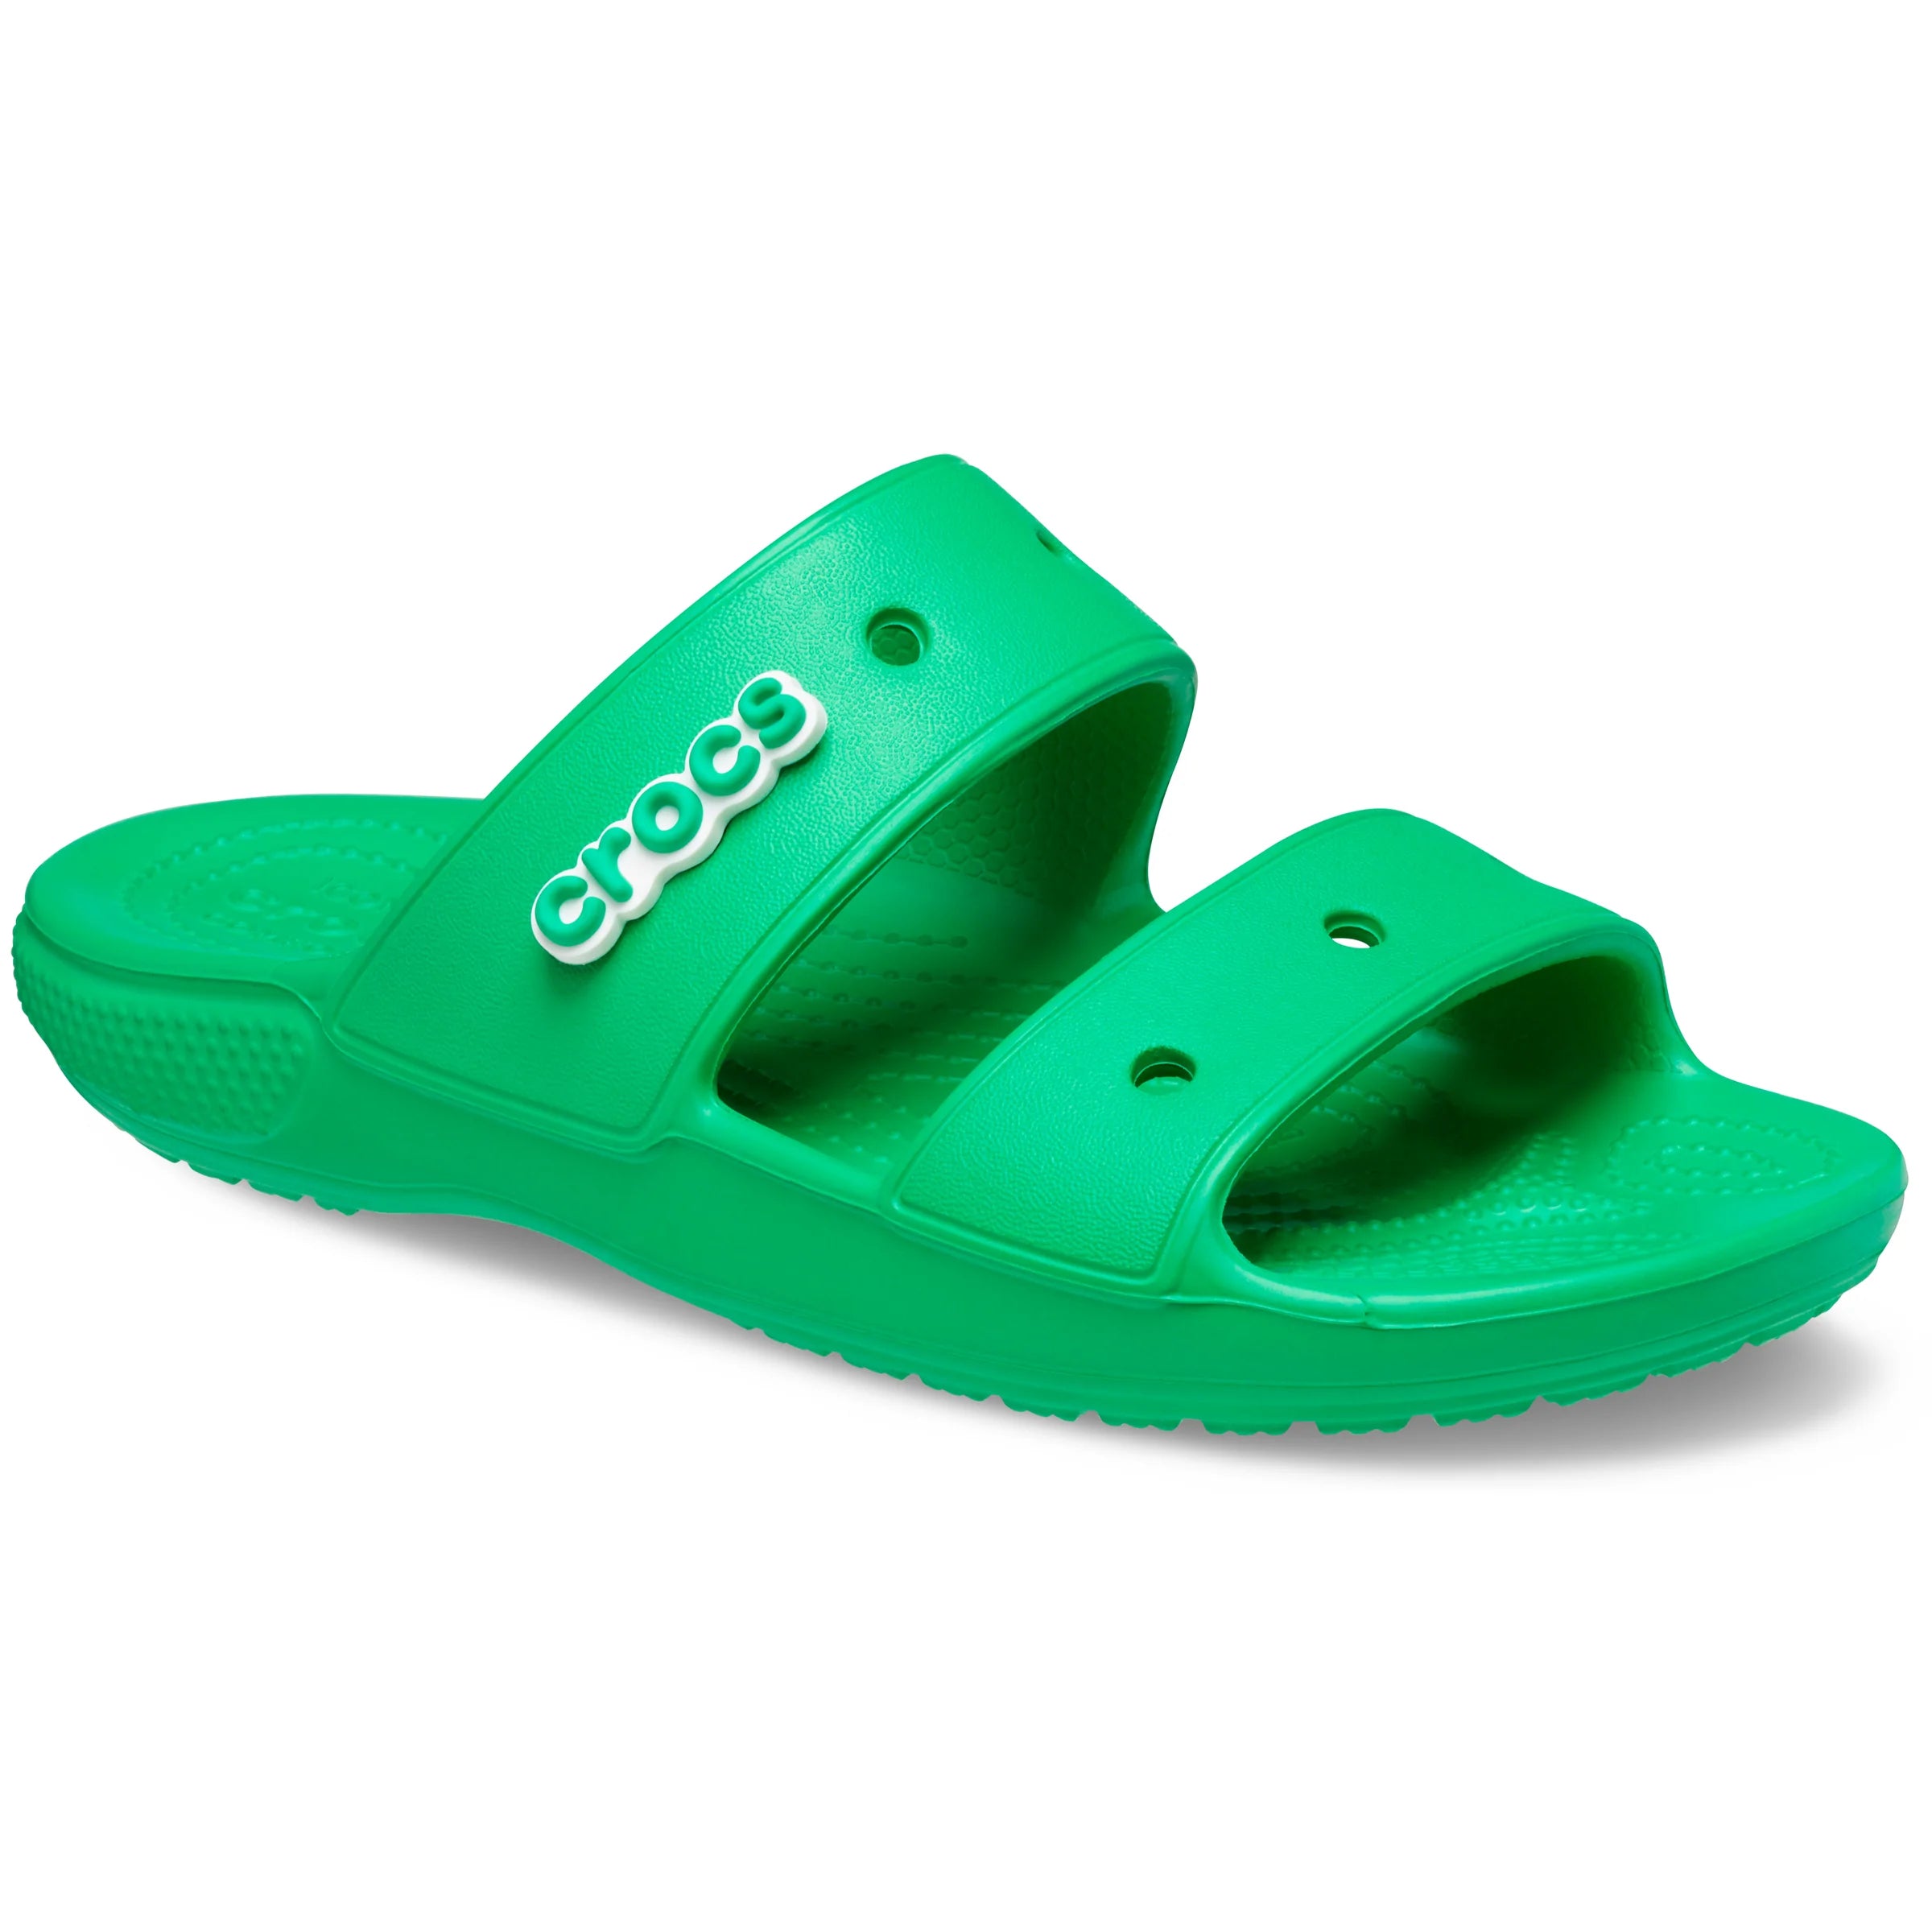 Classic Crocs Sandal - Crocs